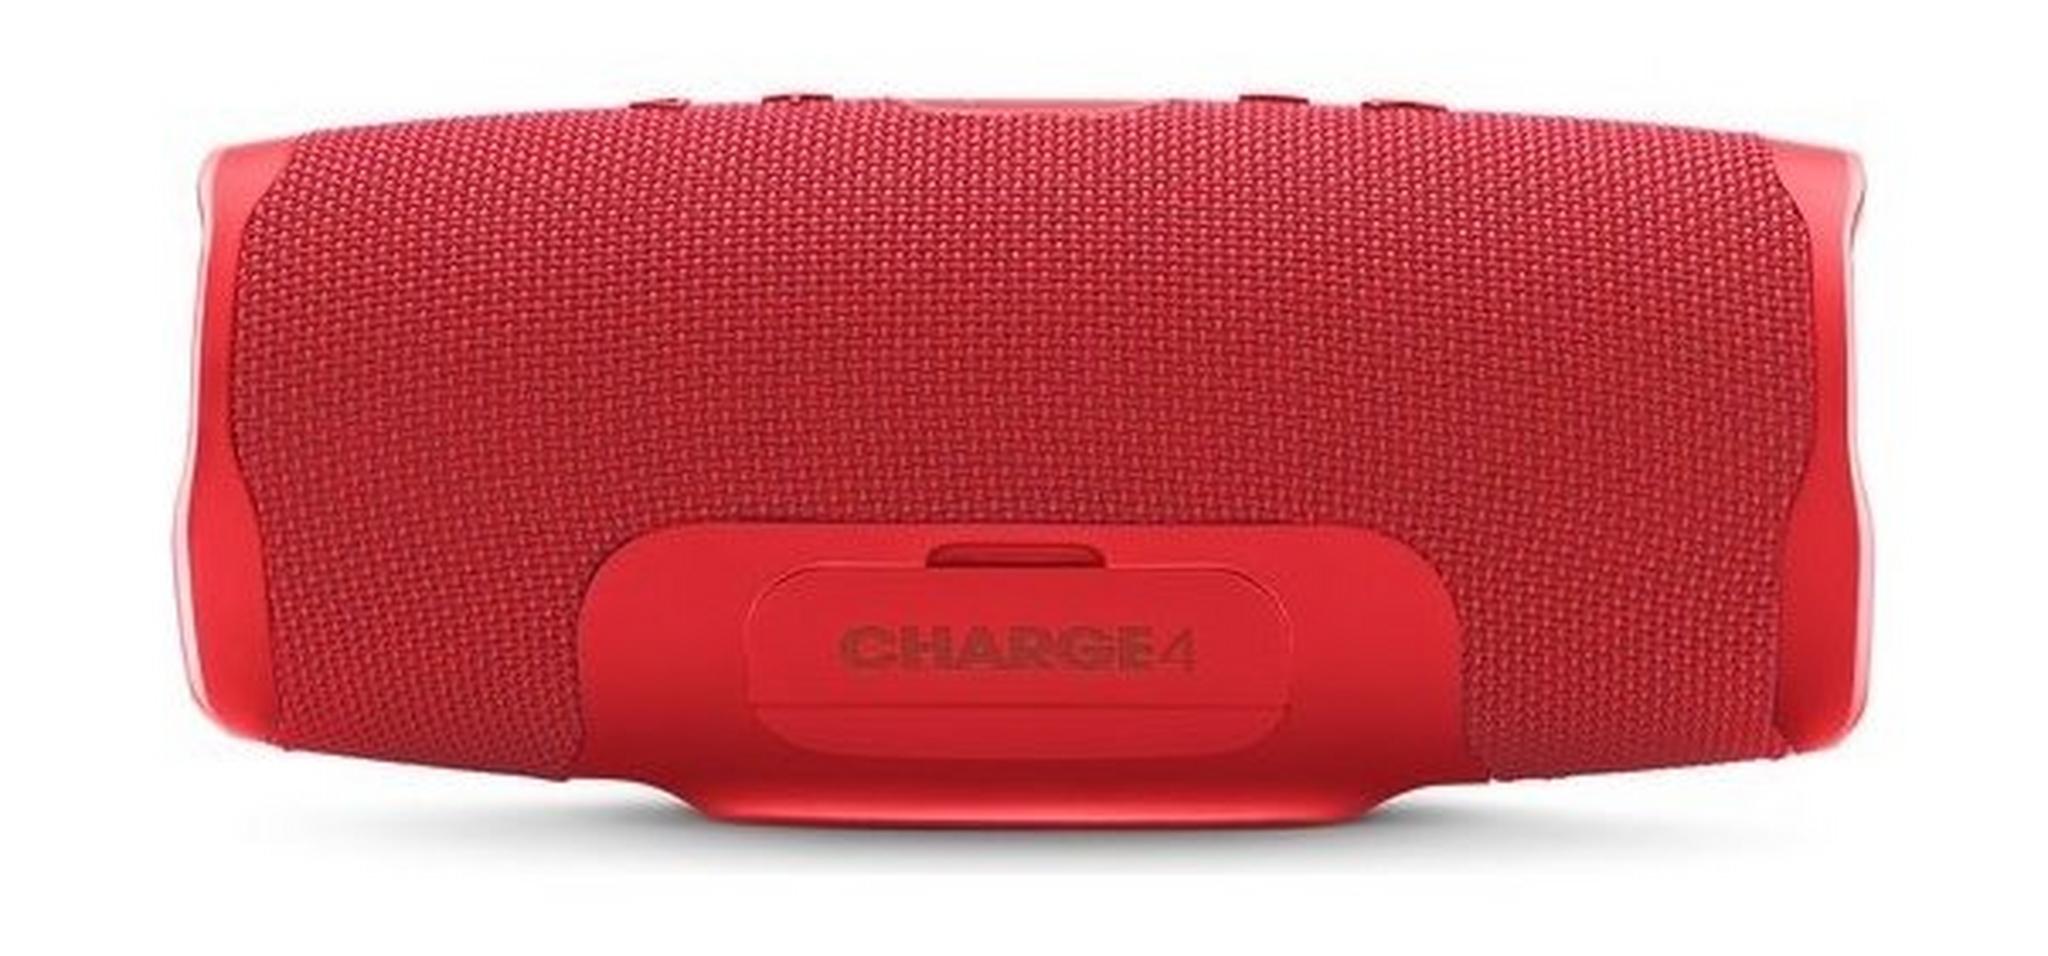 JBL Charge 4 Waterproof Portable Bluetooth Speaker - Red